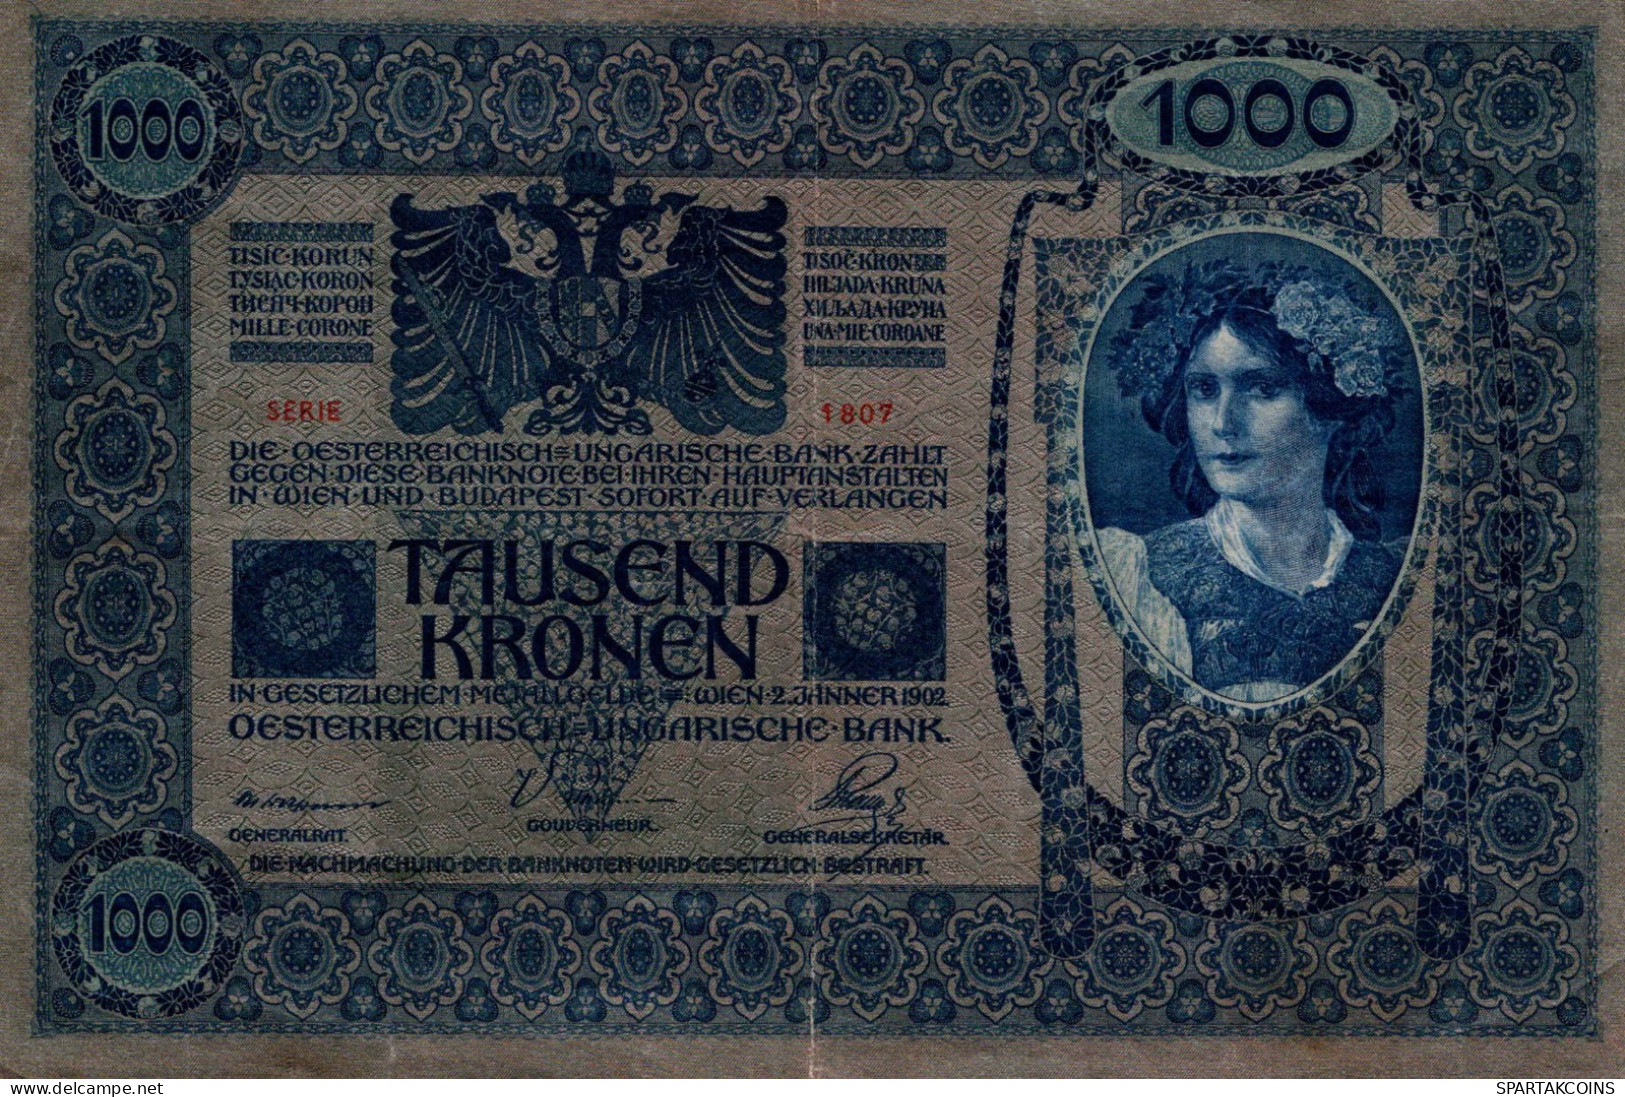 10000 KRONEN 1902 Österreich Papiergeld Banknote #PL323 - [11] Local Banknote Issues